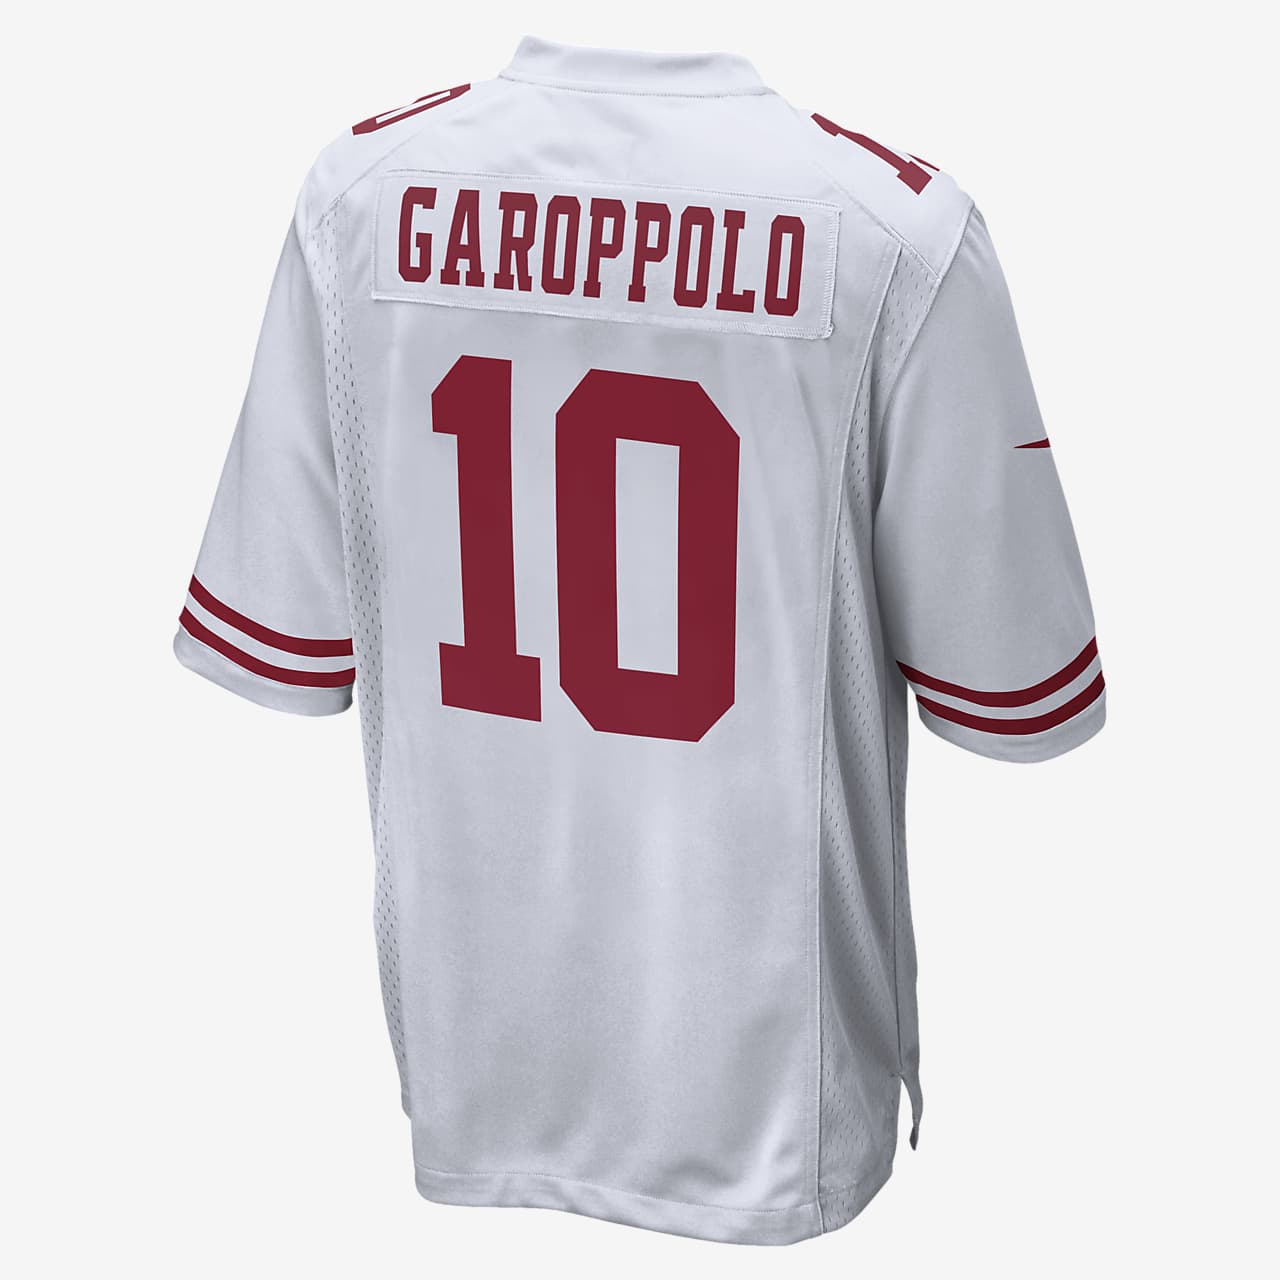 Jimmy Garoppolo #10 Retro Camiseta Jugador Básquetbol Transpirable y Resistente al Desgaste Camiseta Fan Hombres,S